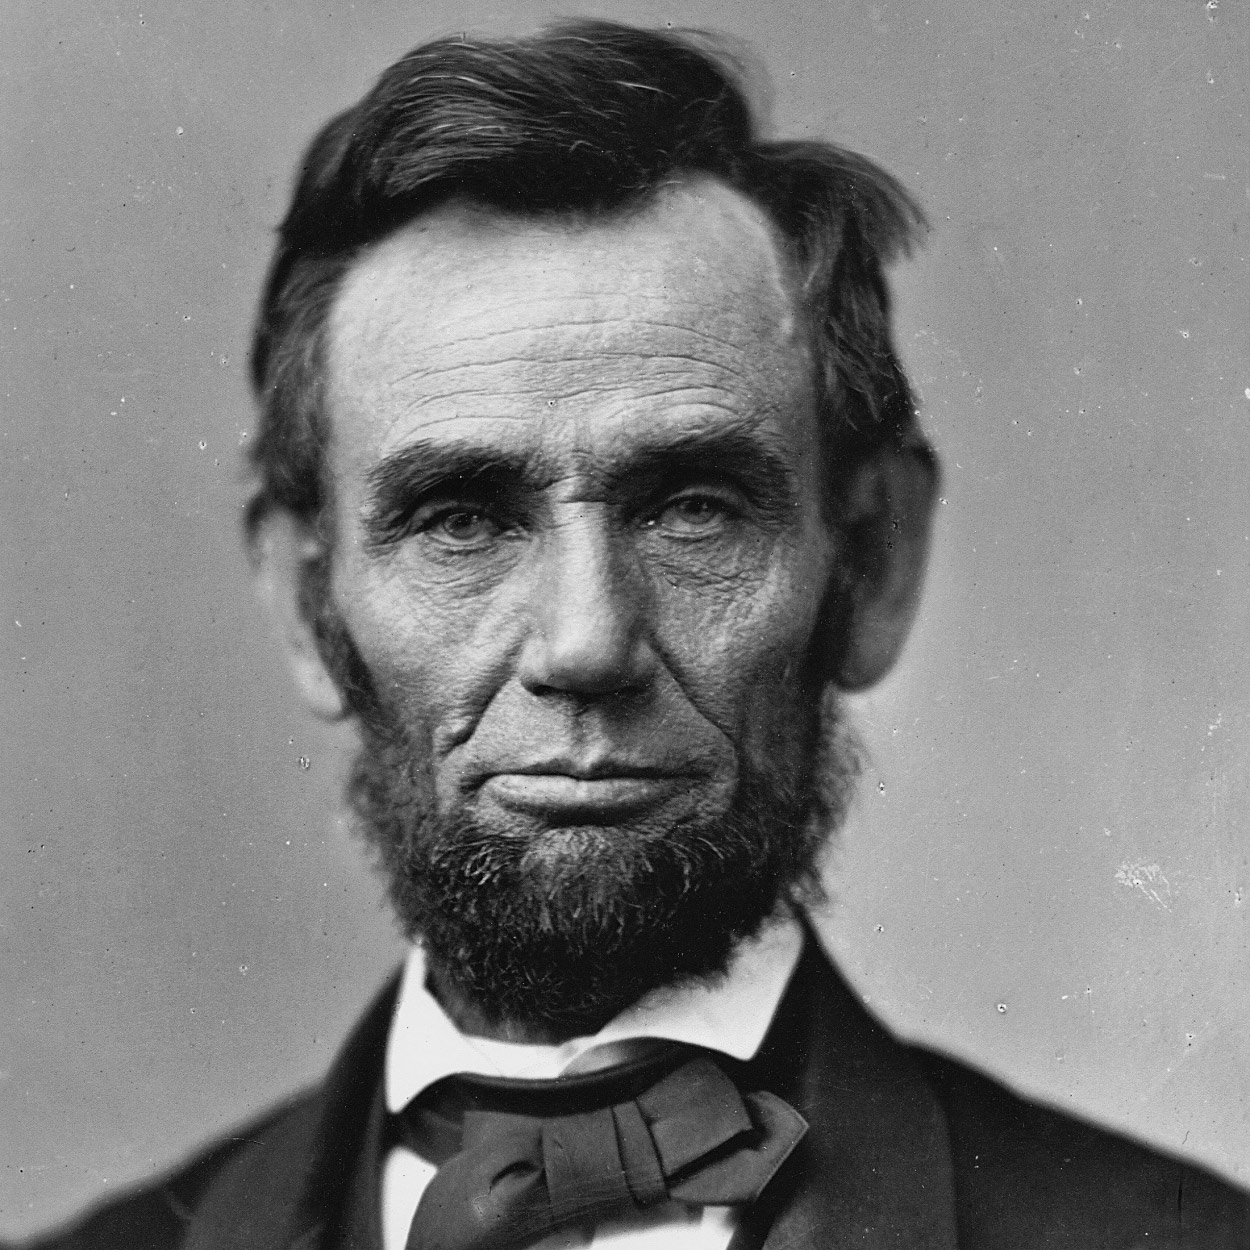 亚伯拉罕林肯于1861年成为美国第16任总统,并于1863年发布了《解放